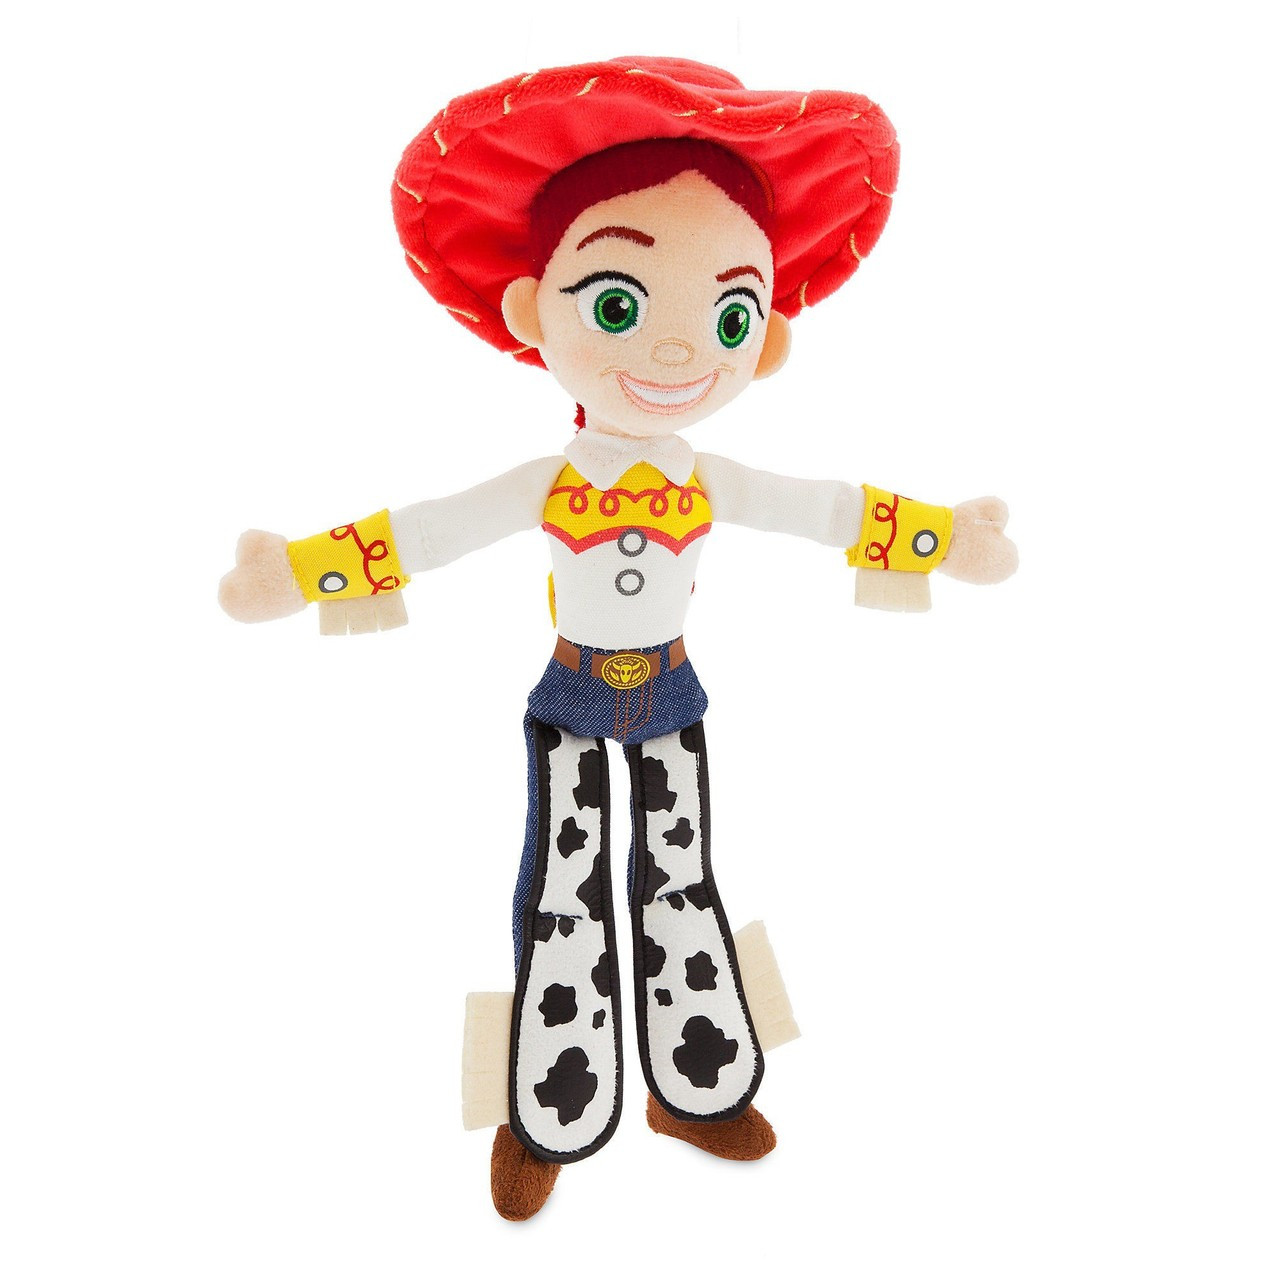 Disney Toy Story 4 Jessie Exclusive 11 Mini Bean Bag Plush 2019 Toywiz 